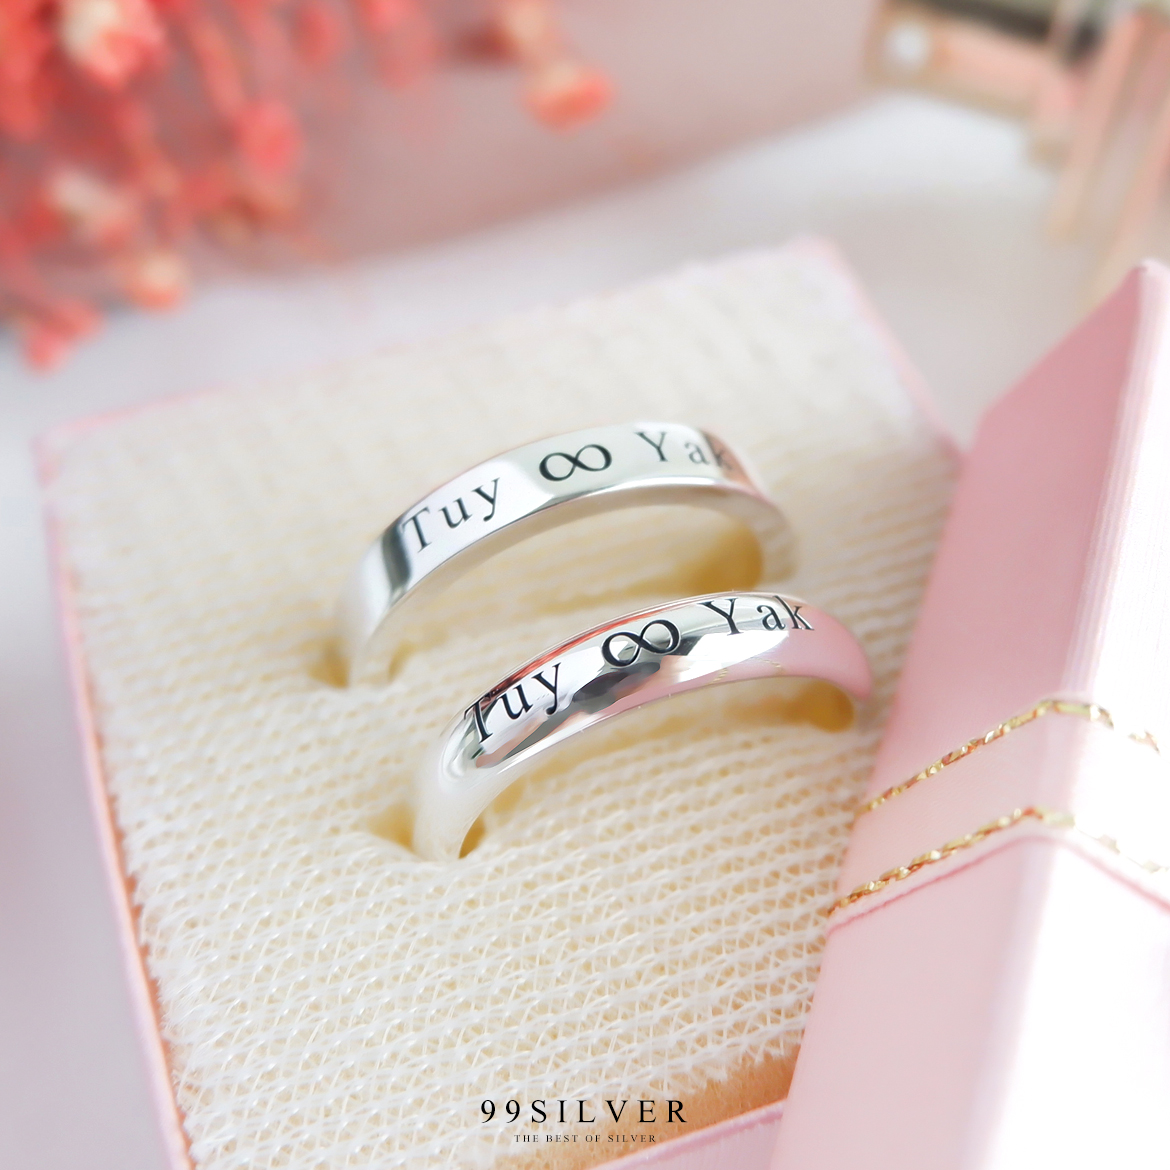 Set แหวนคู่รักสองวง เงินแท้รุ่นนิยมที่สุดหน้ากว้าง 4 มิลลิเมตร แบบเรียบและโค้งพรีเมี่ยม